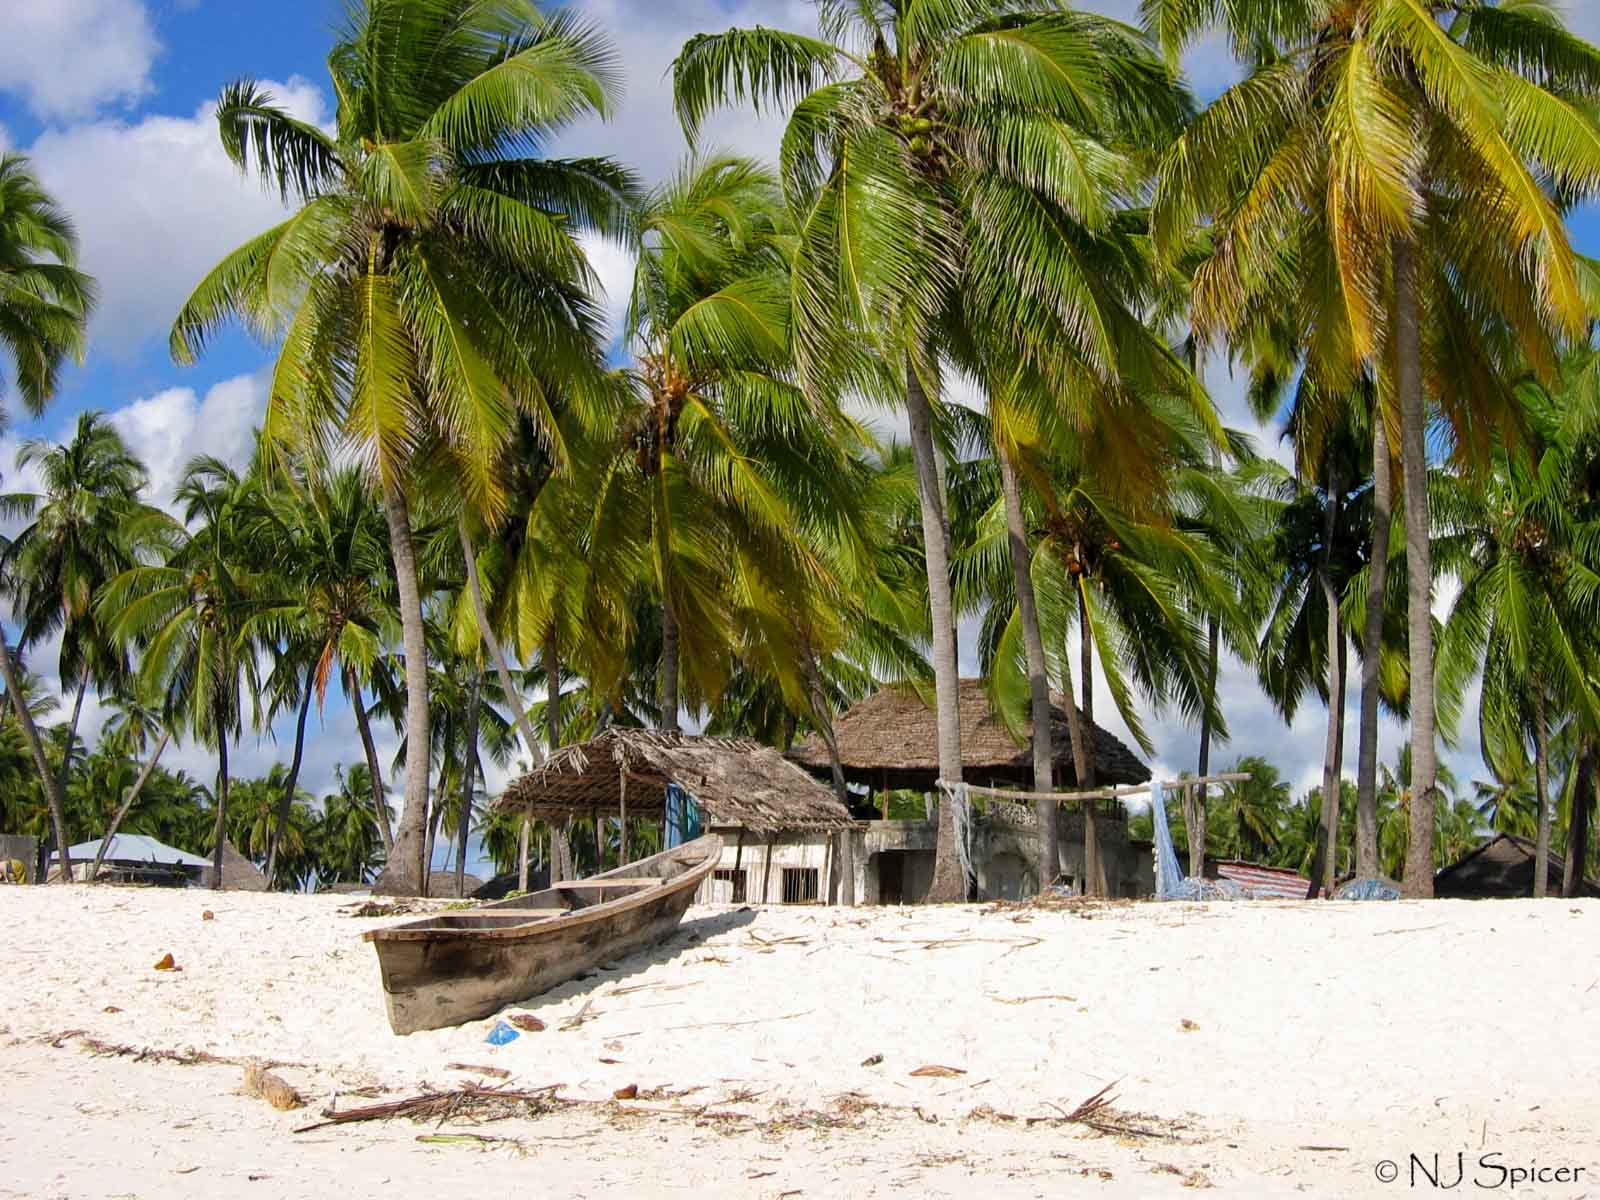 File:Beach at Zanzibar.jpg - Wikimedia Commons